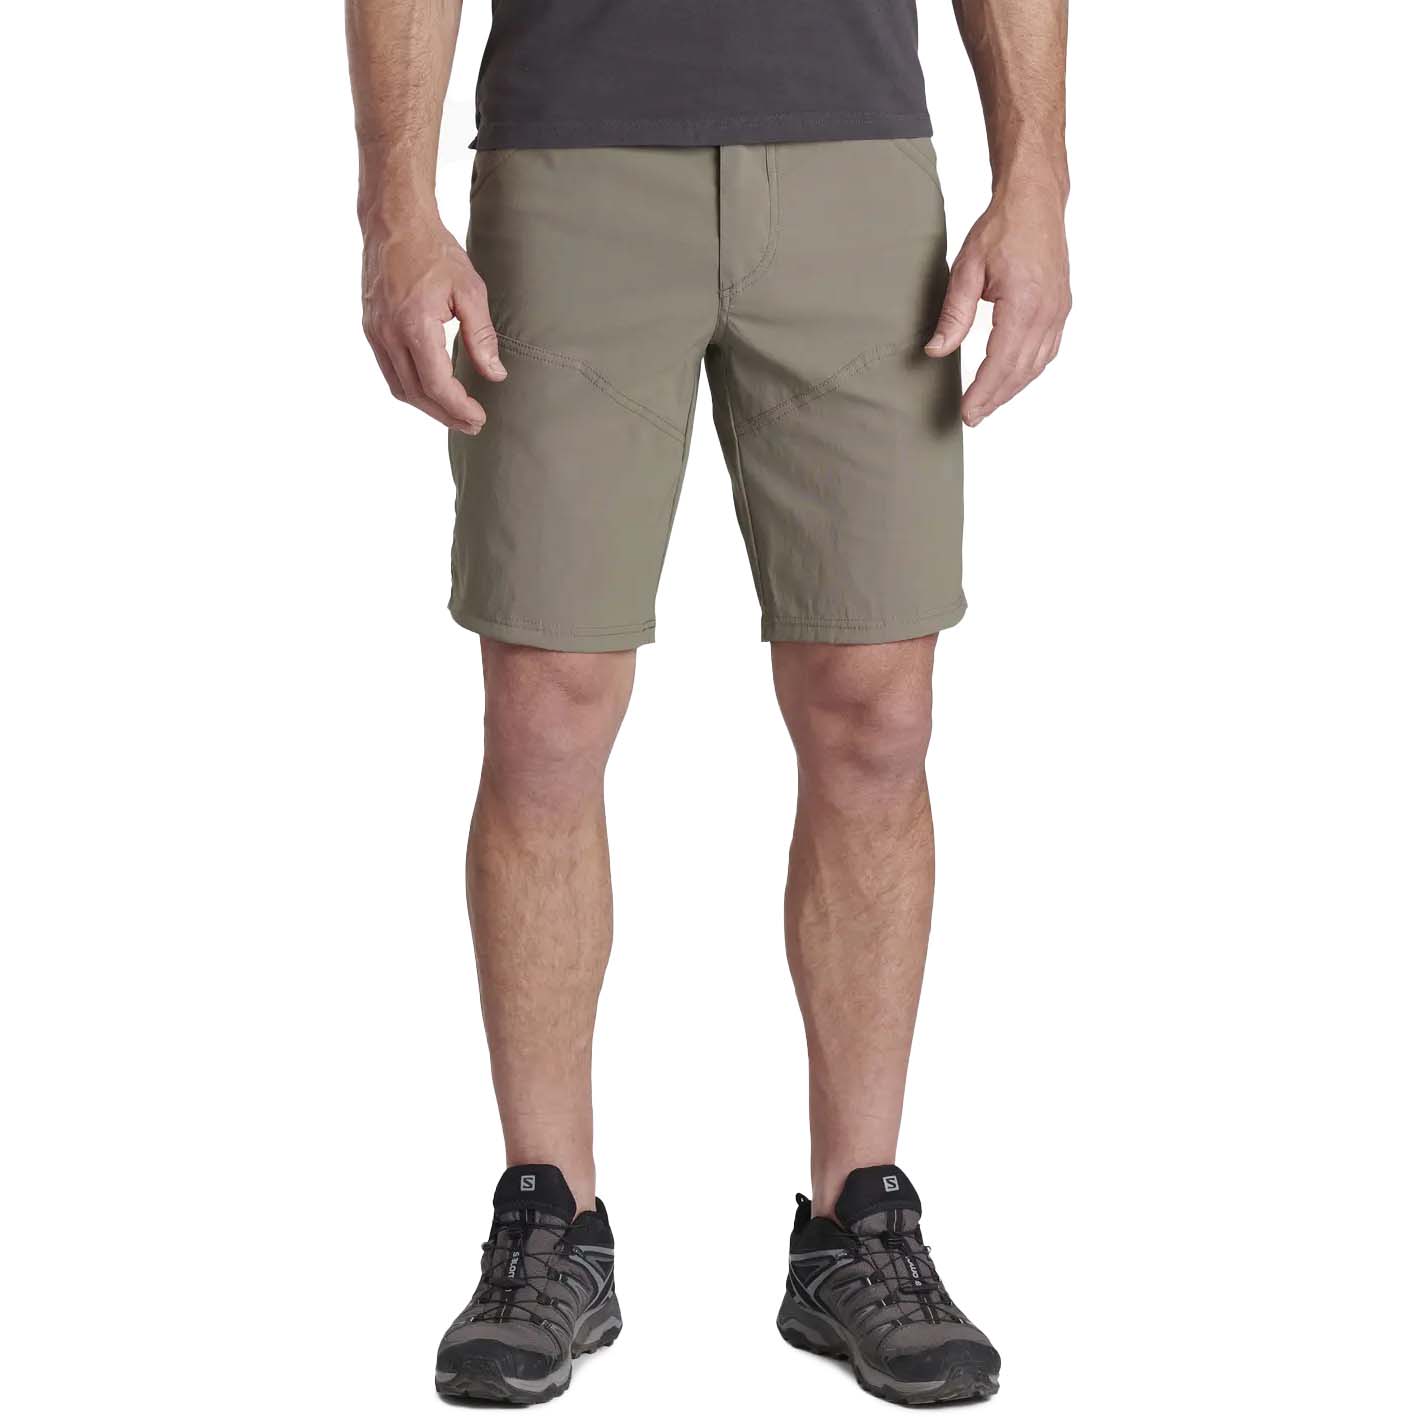 Kuhl Renegade 12" Men's Hiking Shorts